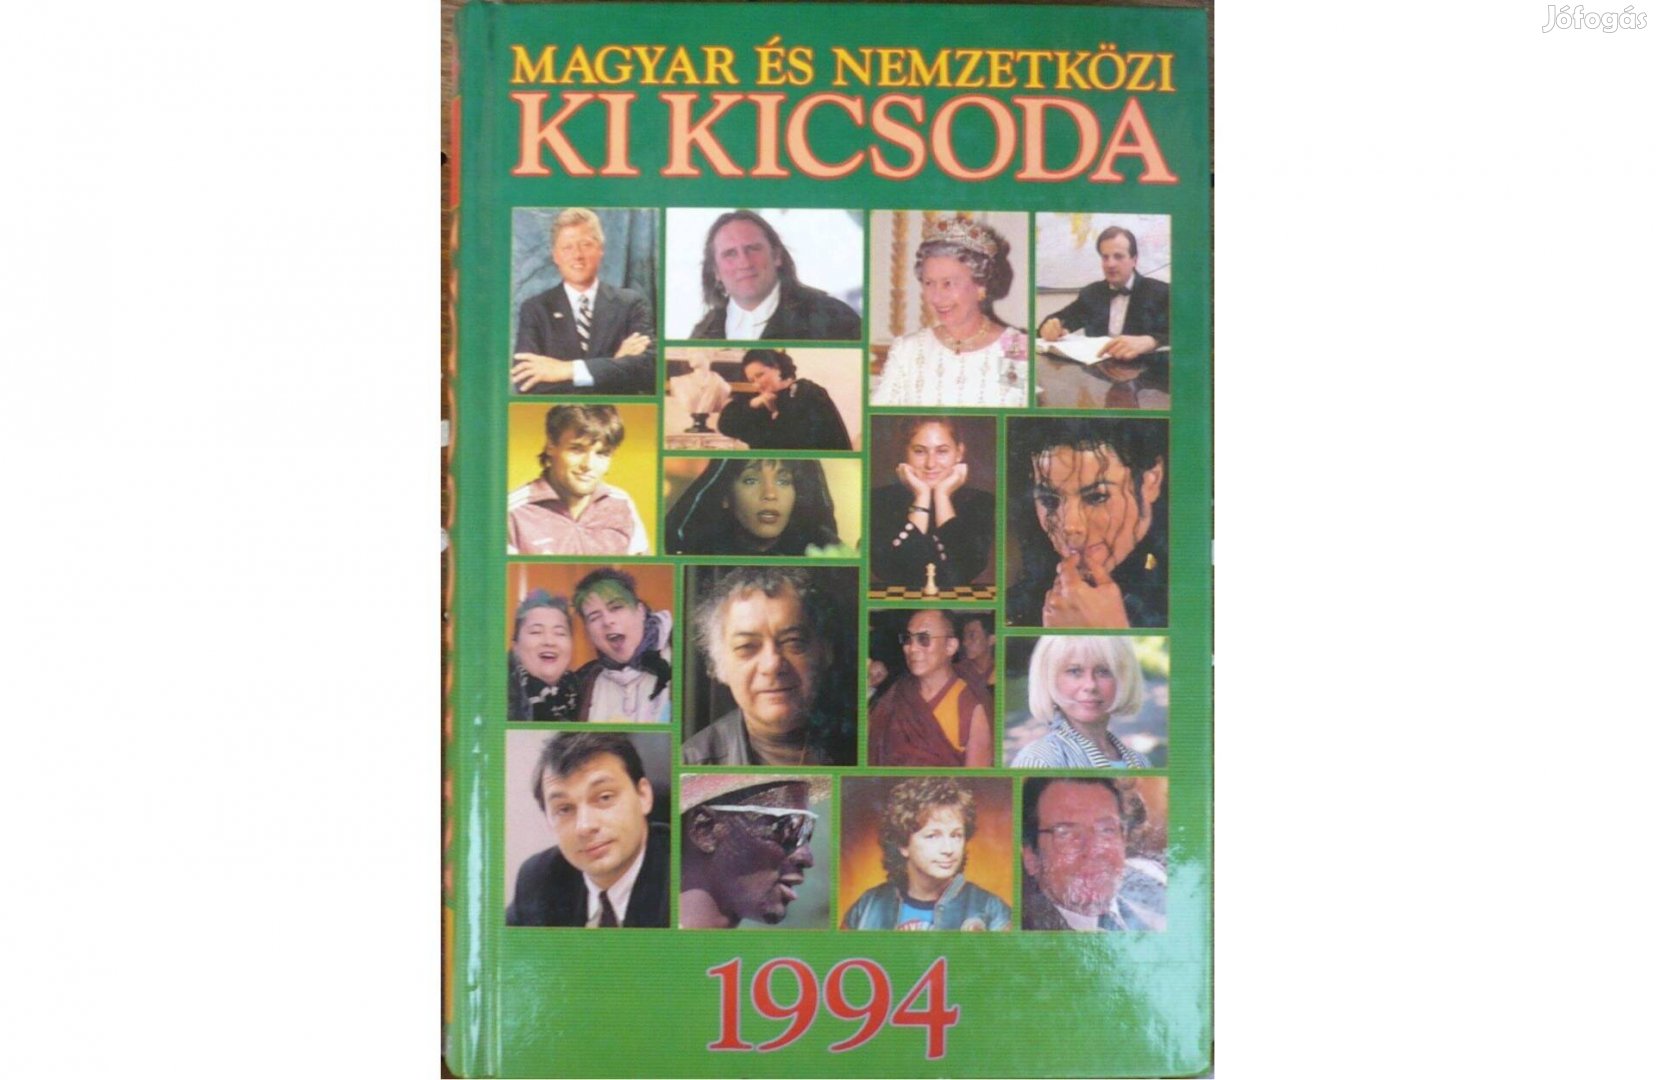 Magyar és nemzetközi ki kicsoda, 1994